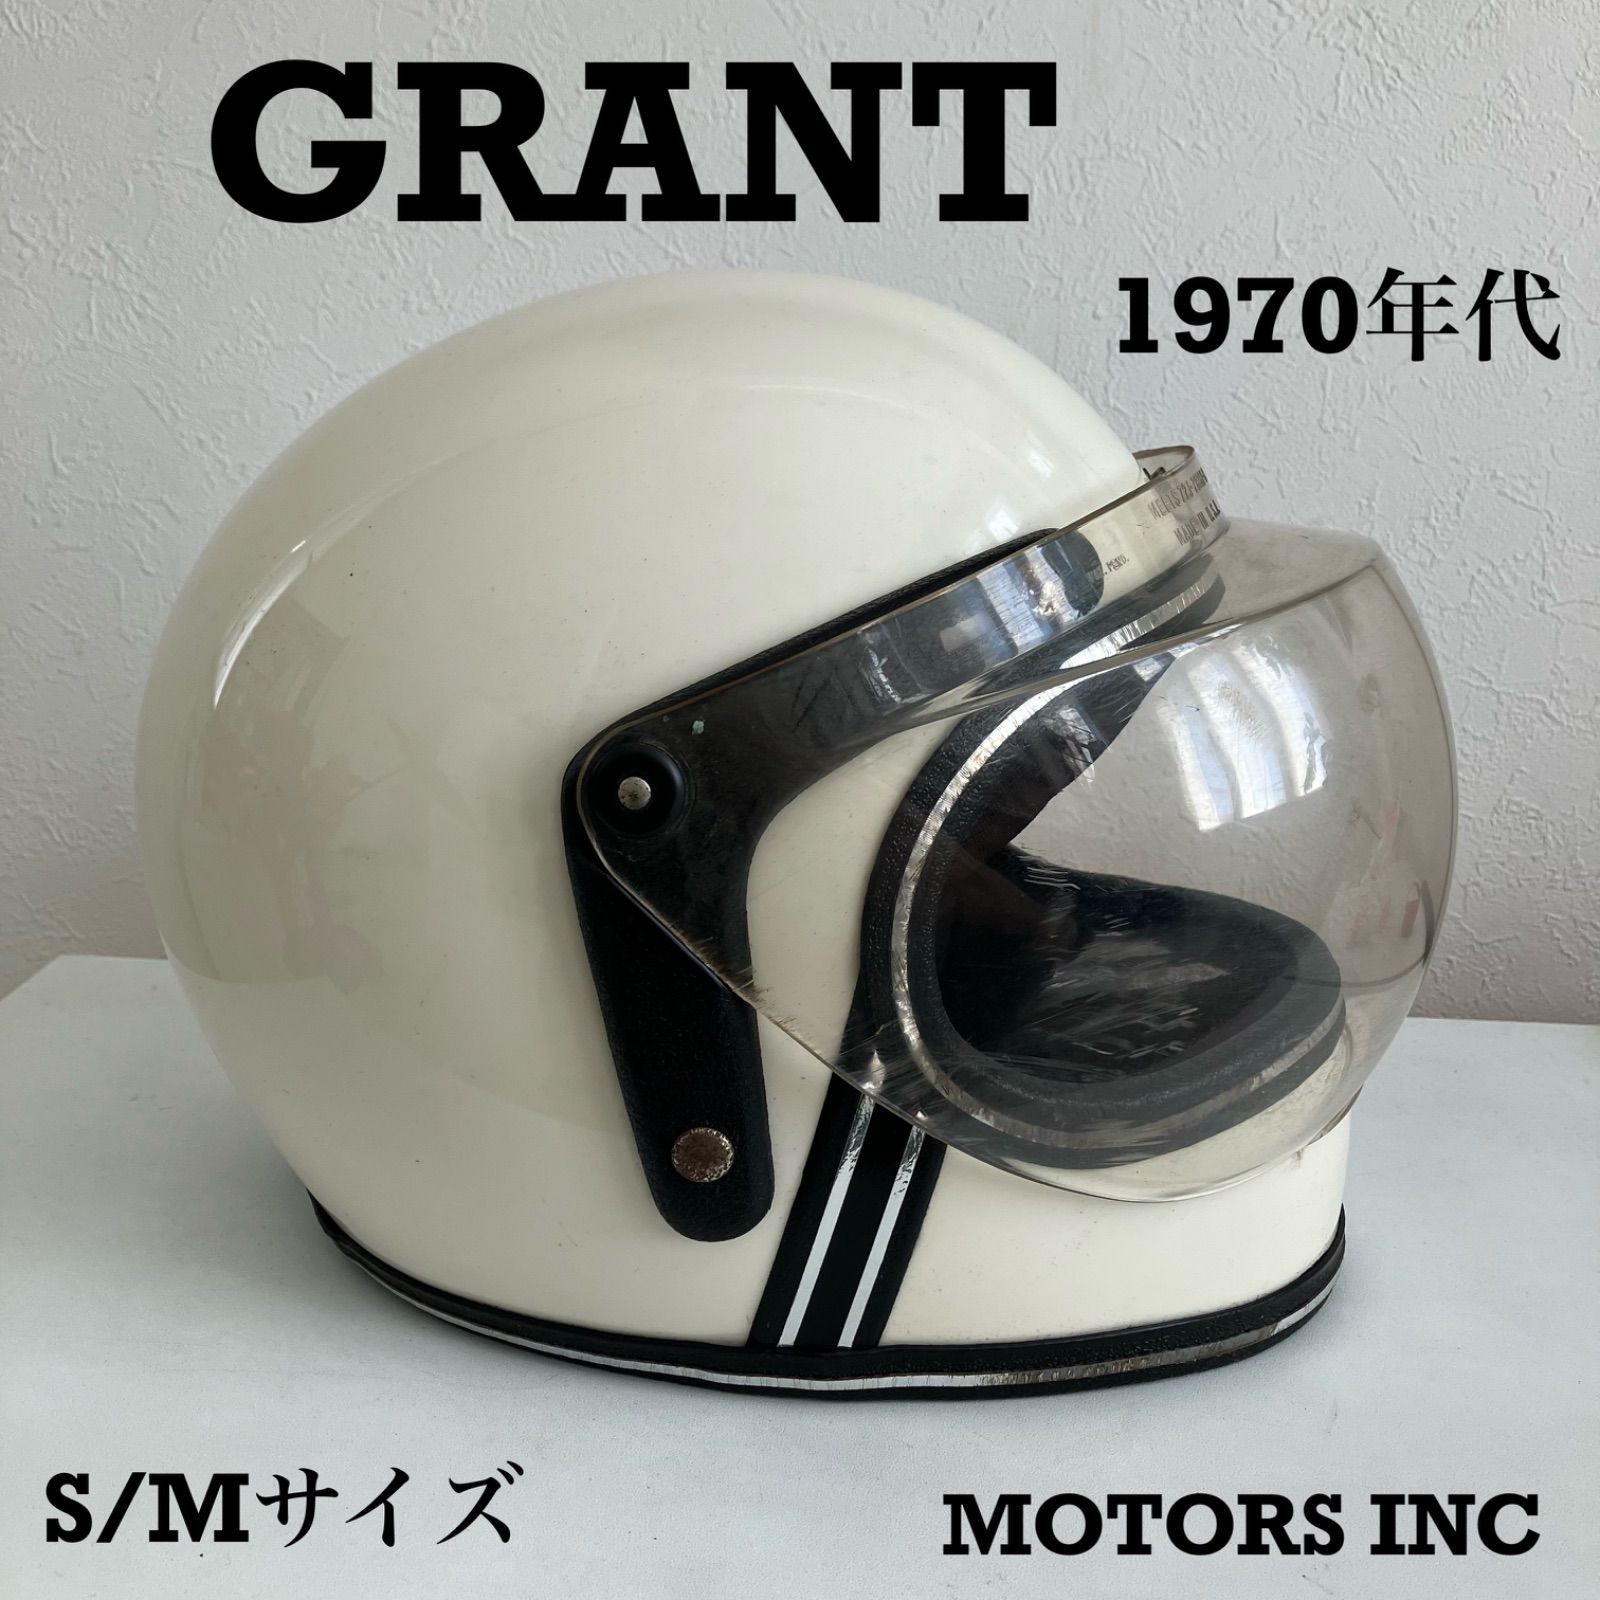 GRANT RG-9☆S-Mサイズ ビンテージヘルメット 1970年代 白 希少 旧車 